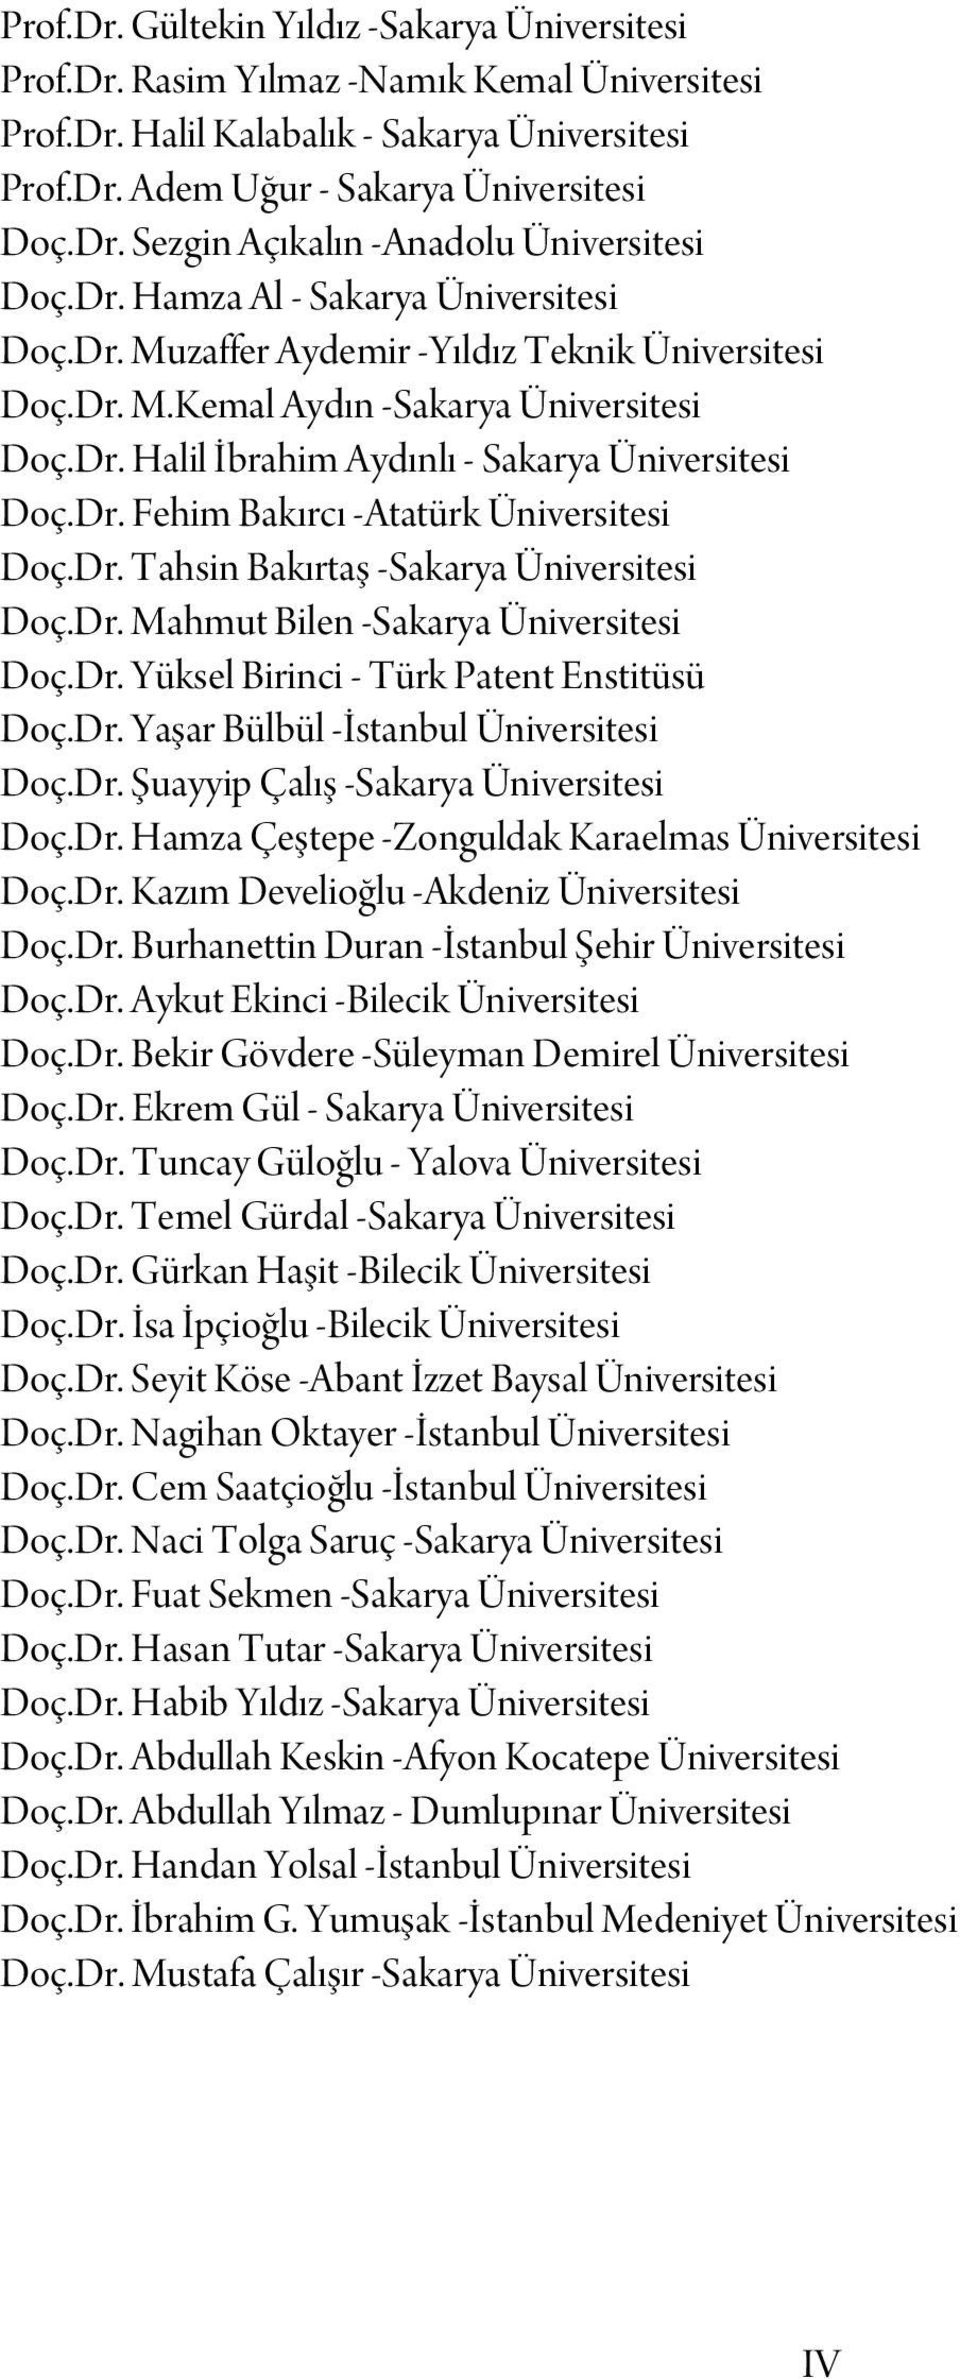 Dr. Tahsin Bakırtaş -Sakarya Üniversitesi Doç.Dr. Mahmut Bilen -Sakarya Üniversitesi Doç.Dr. Yüksel Birinci - Türk Patent Enstitüsü Doç.Dr. Yaşar Bülbül -İstanbul Üniversitesi Doç.Dr. Şuayyip Çalış -Sakarya Üniversitesi Doç.